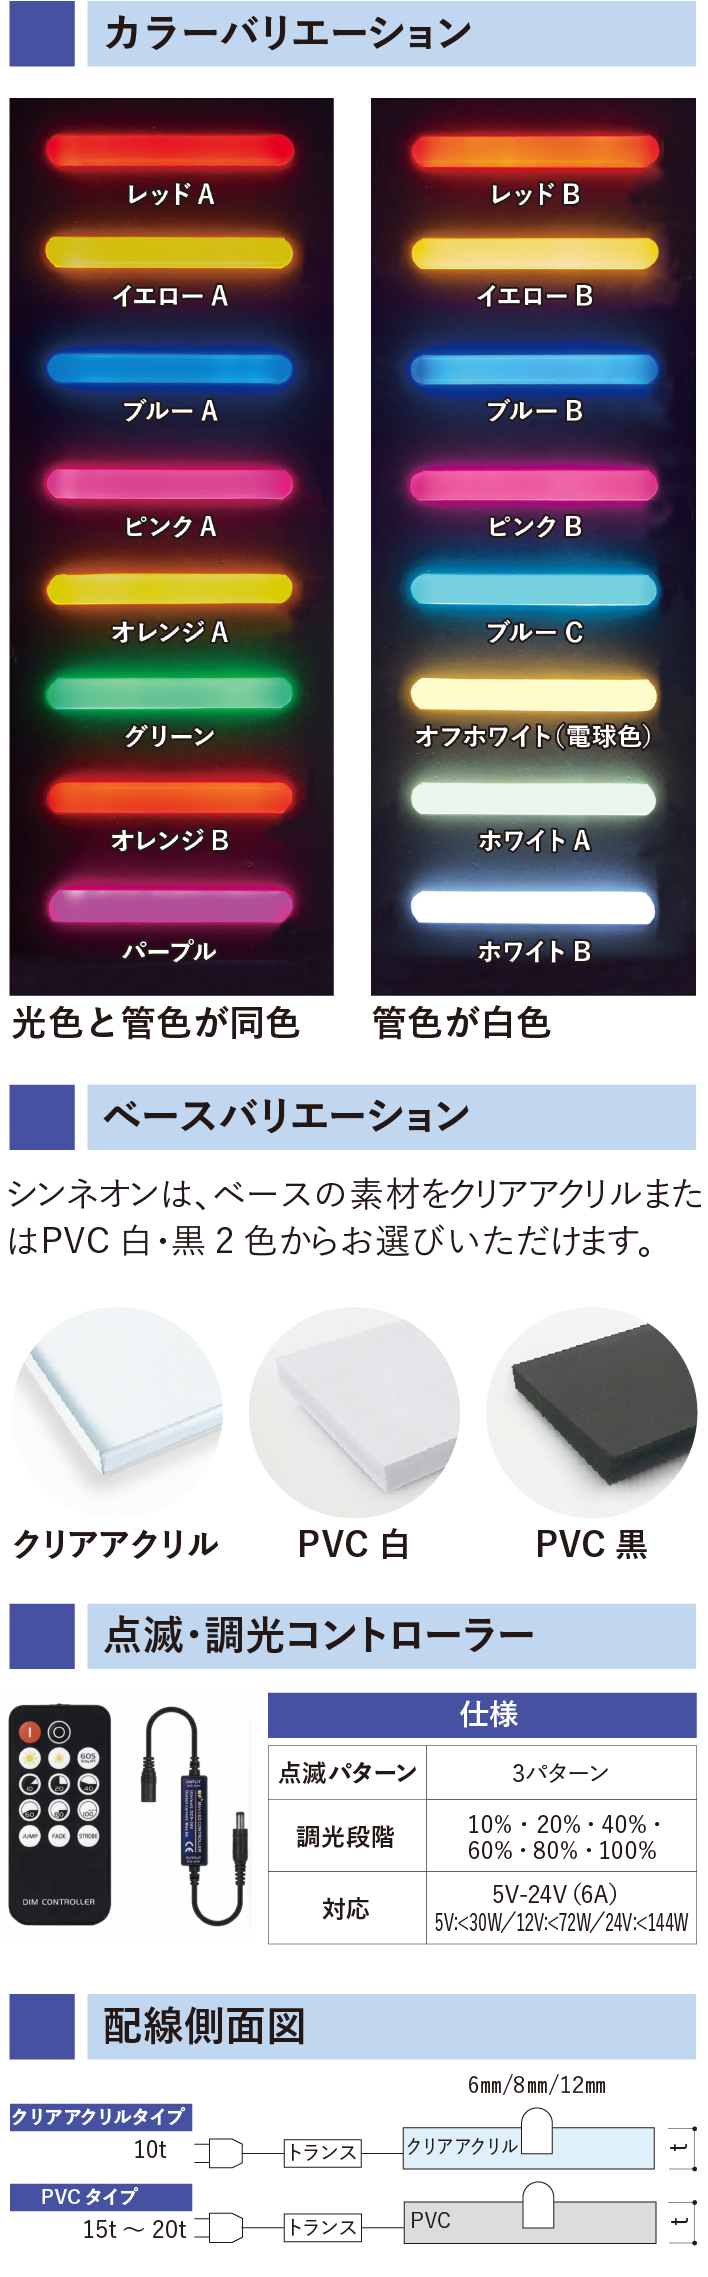 シンネオン SDシリーズ（カスタムオーダーメイド品）